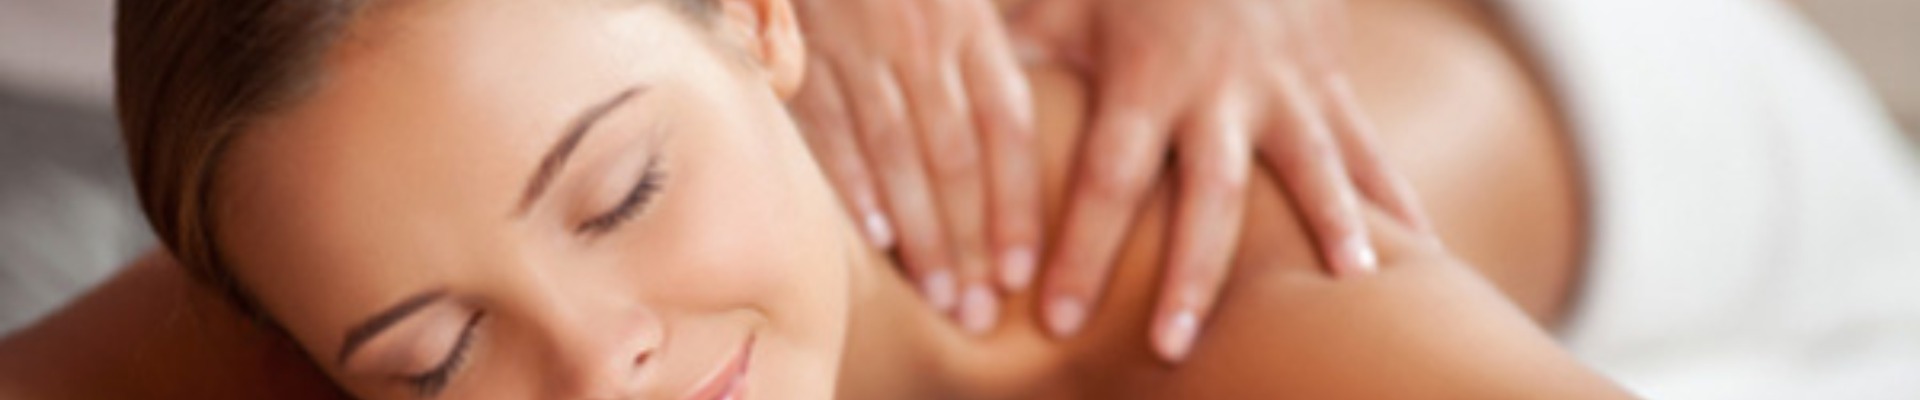 Ocala Swedish Massage Therapy - Be Well Holistic Massage Wellness Center, P.A.